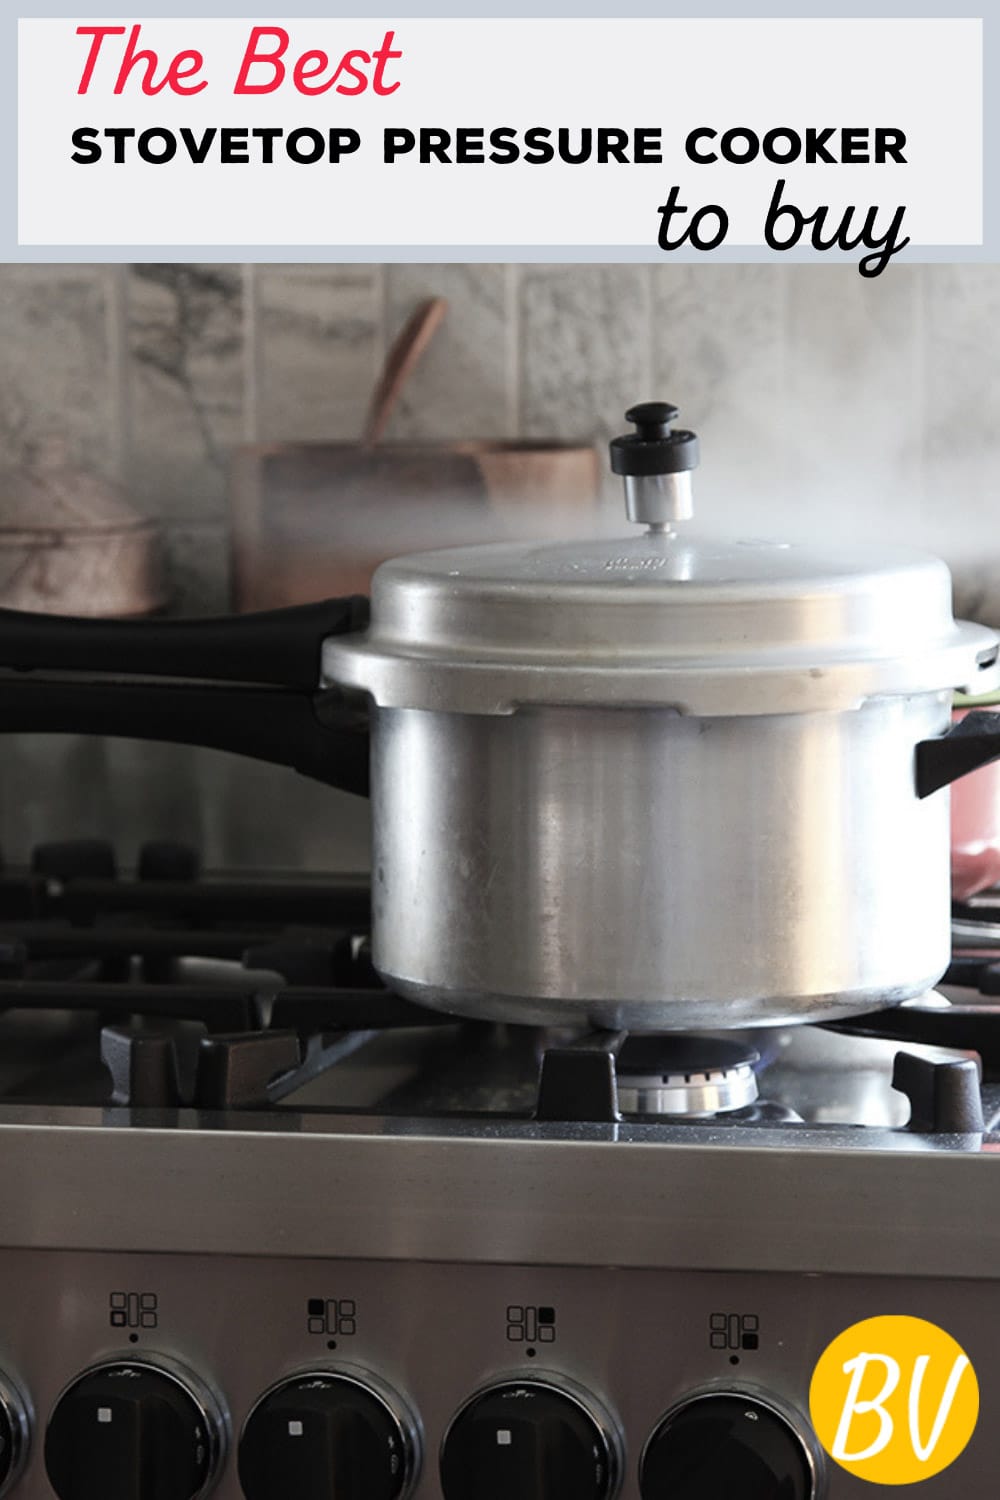 Best Stovetop Pressure Cookers: Presto, Prestige, Hawkins, Fissler